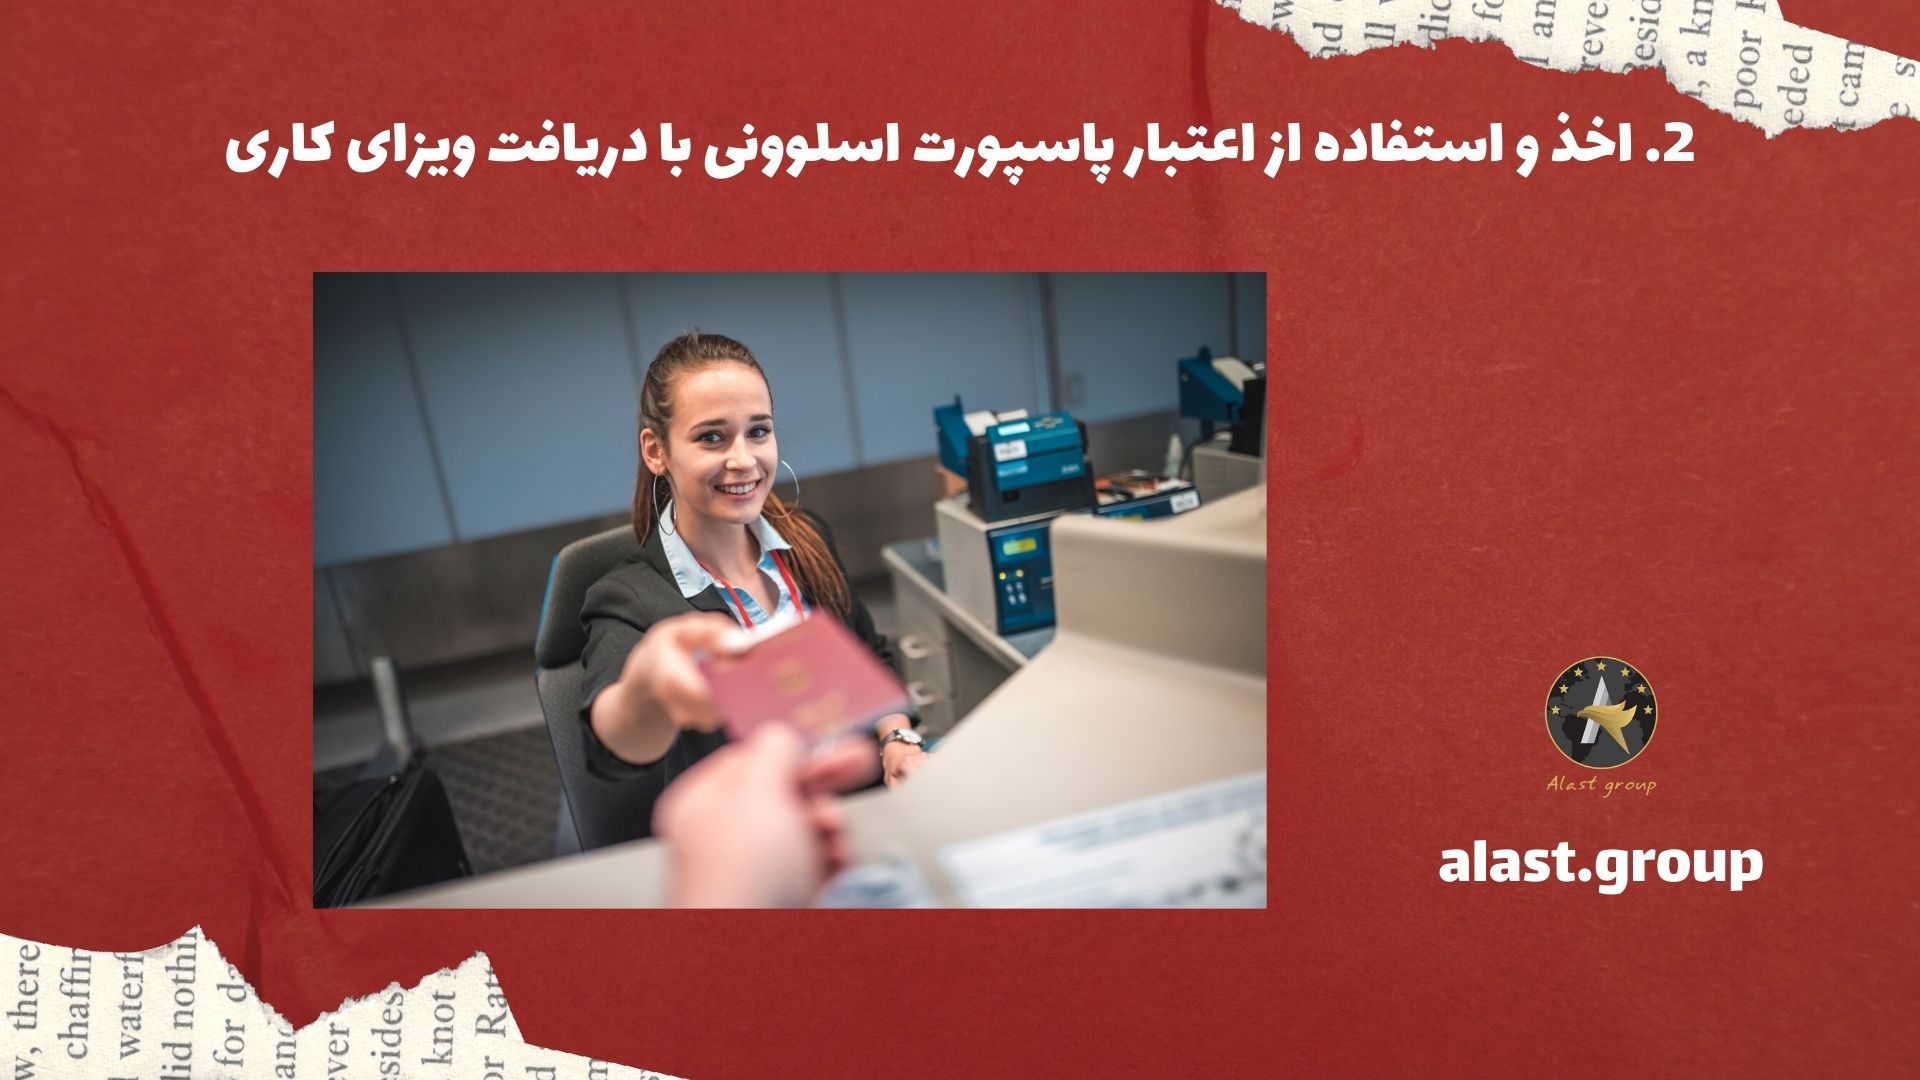 اخذ و استفاده از اعتبار پاسپورت اسلوونی با دریافت ویزای کاری